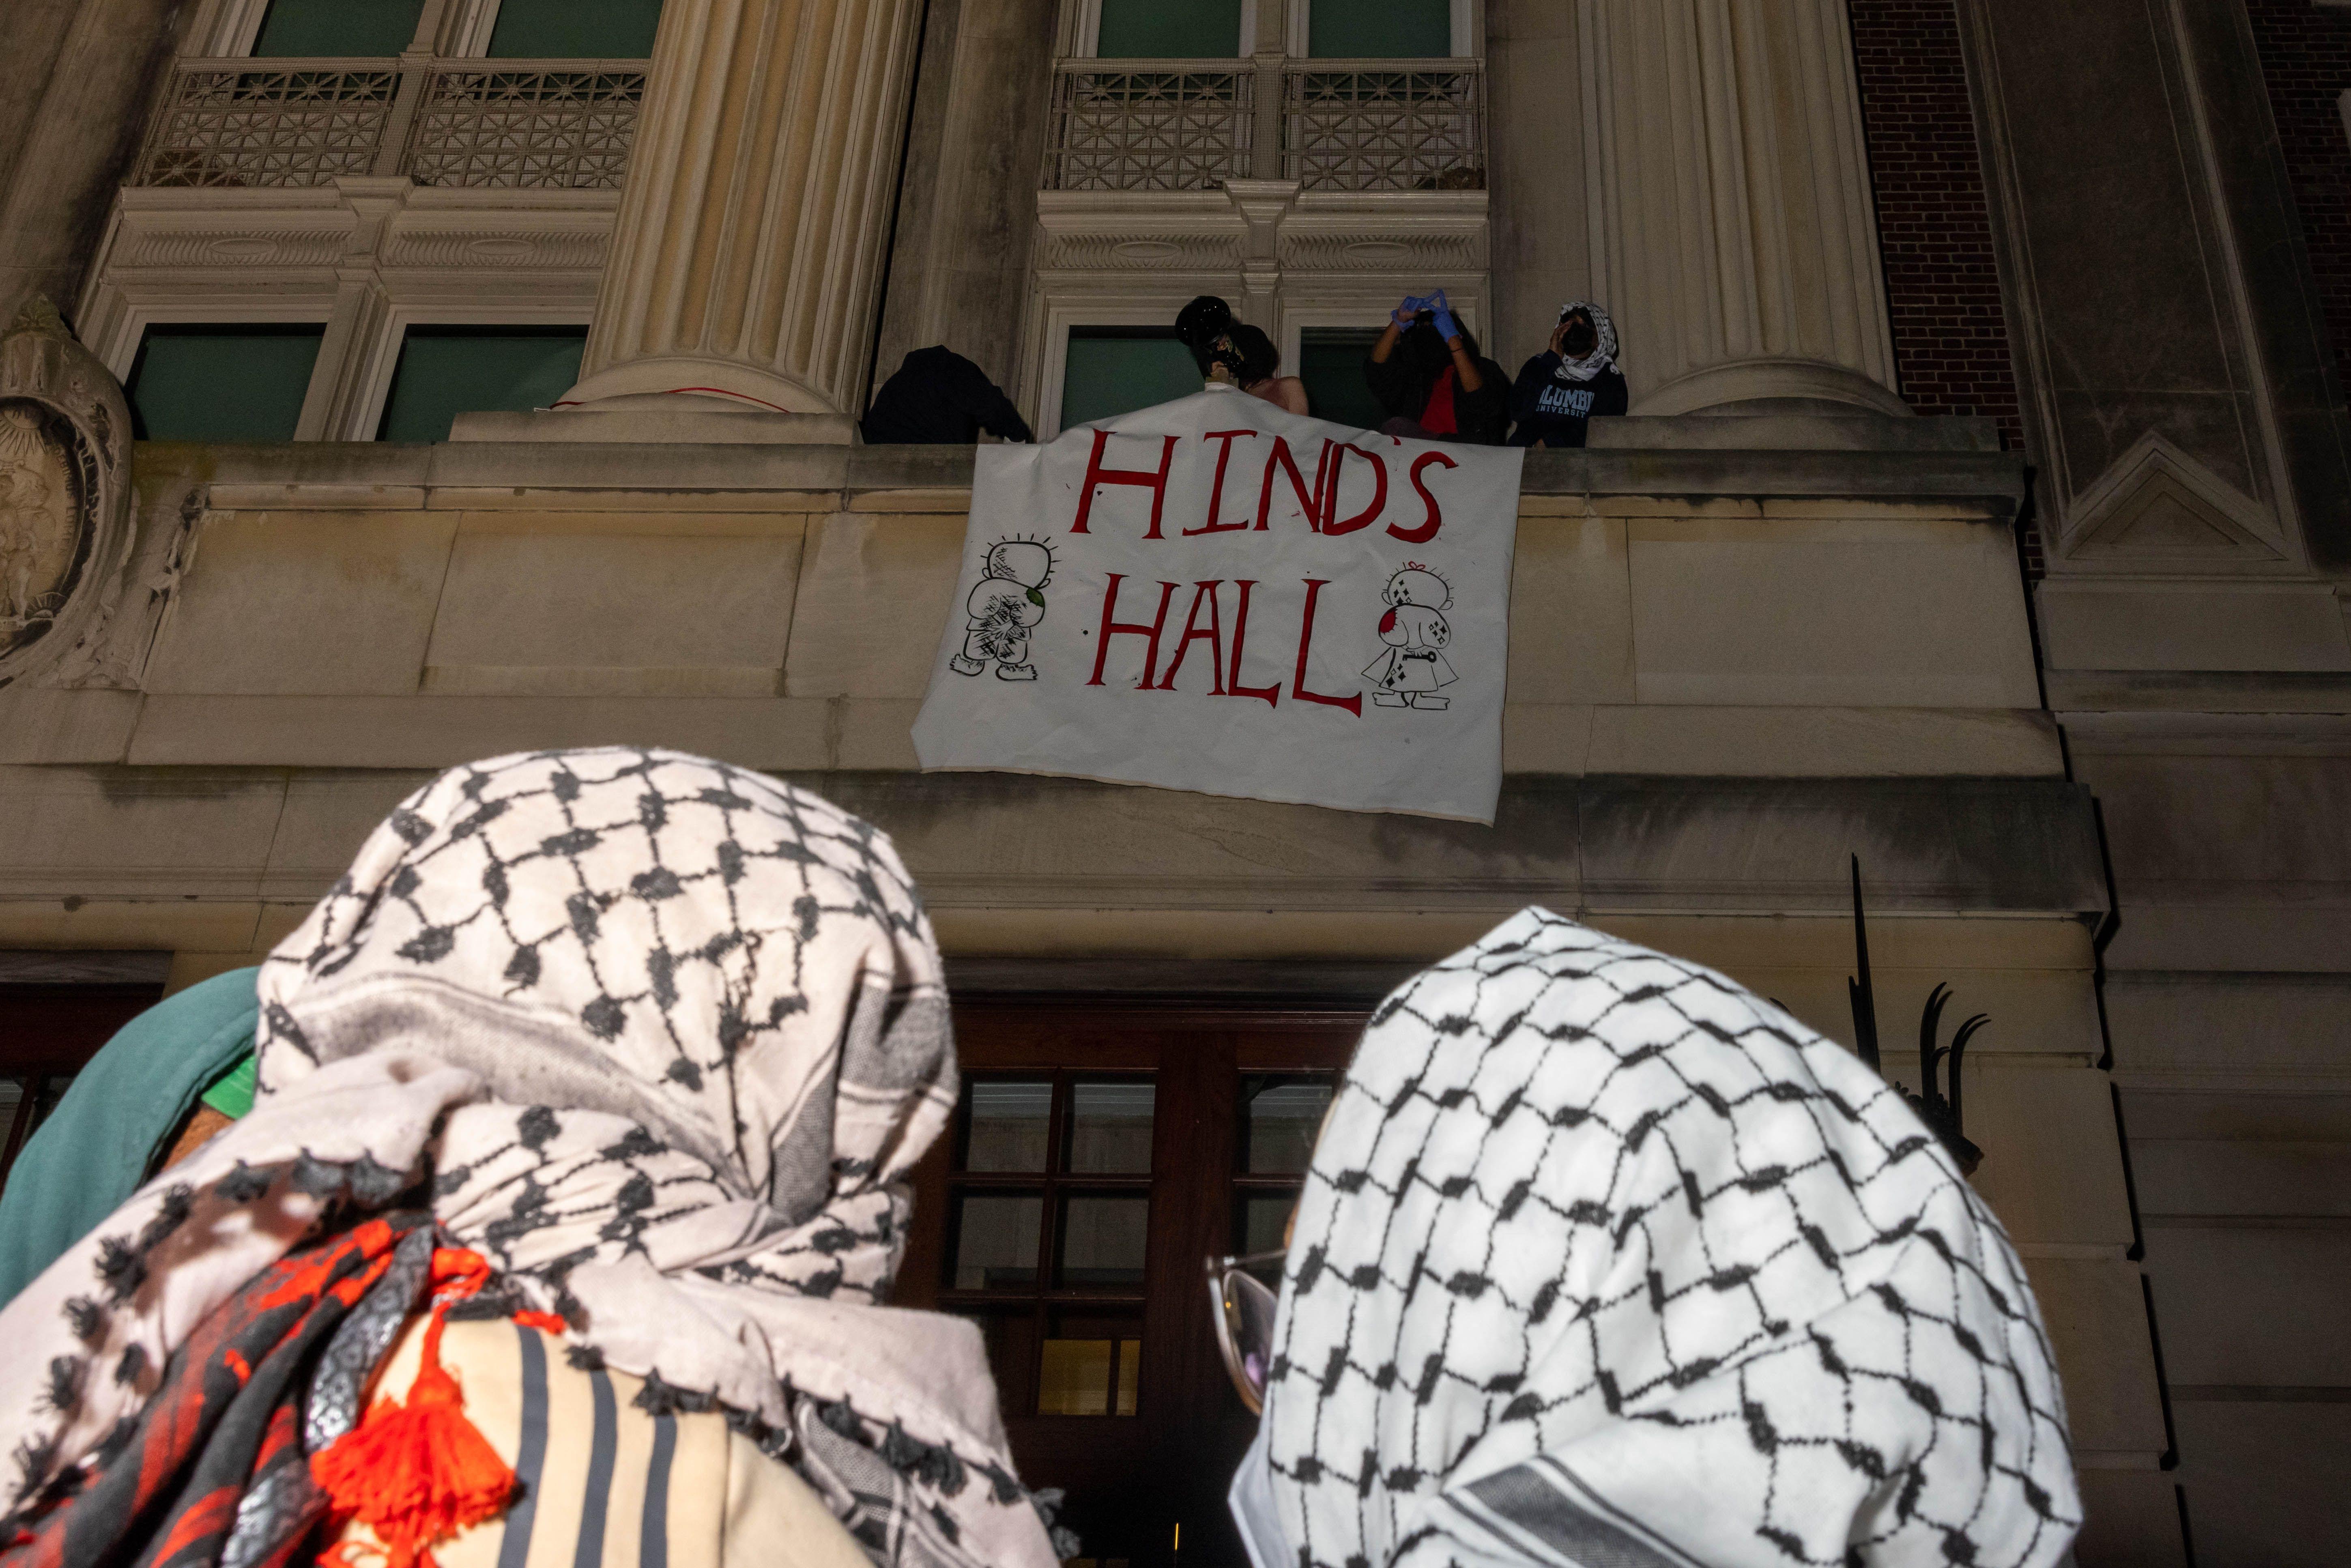 Manifestantes con pañuelos palestinos en la cabeza ven como ocupantes del edificio colocan un cartel en un balcón que dice 